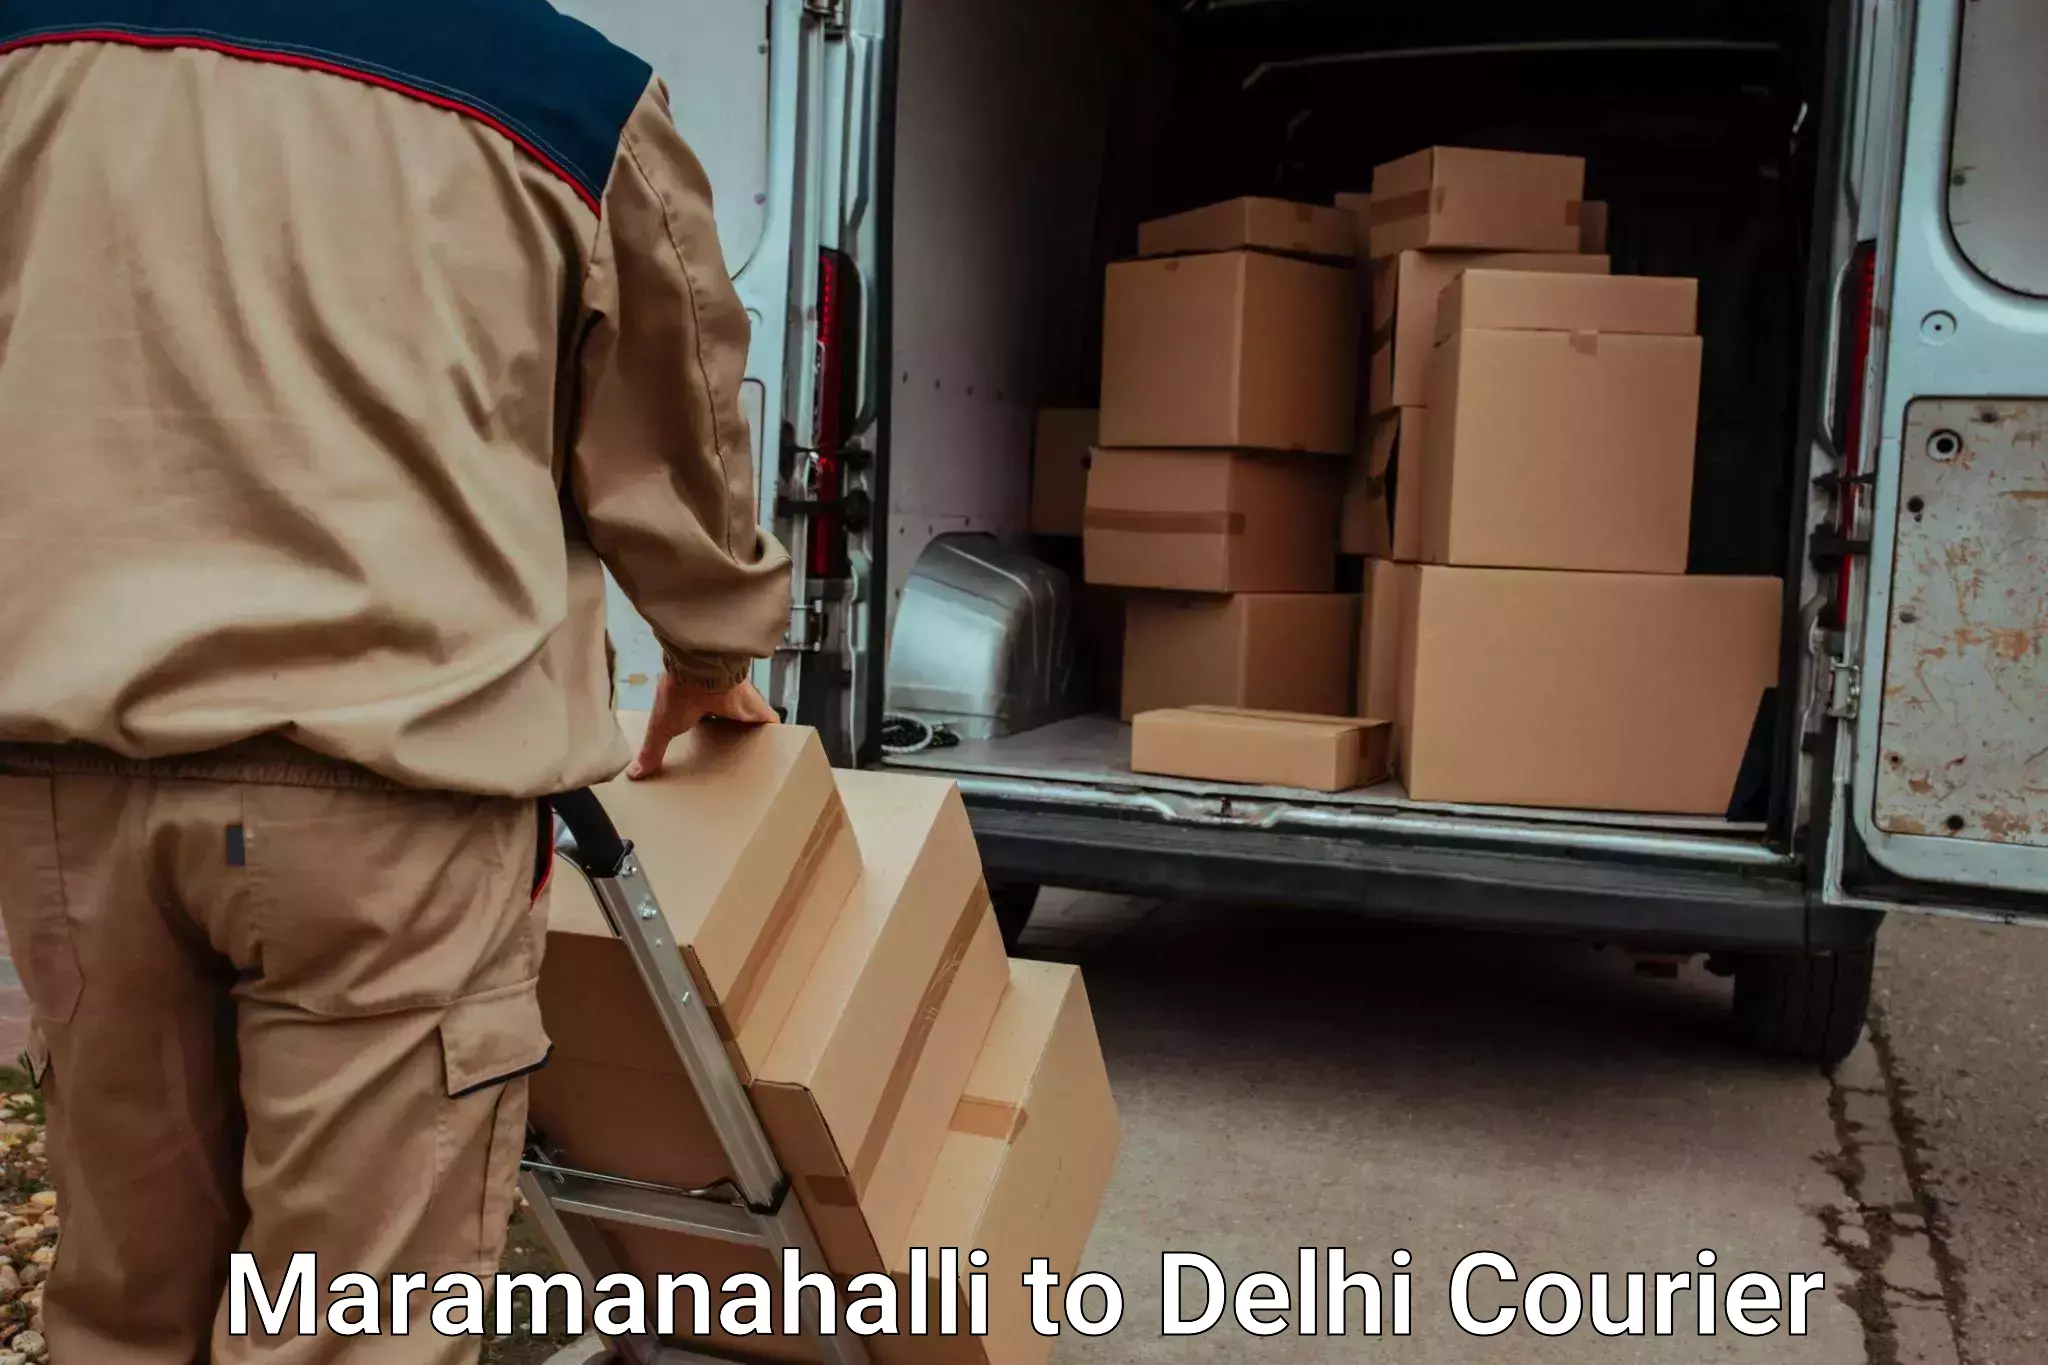 Same day luggage service Maramanahalli to IIT Delhi